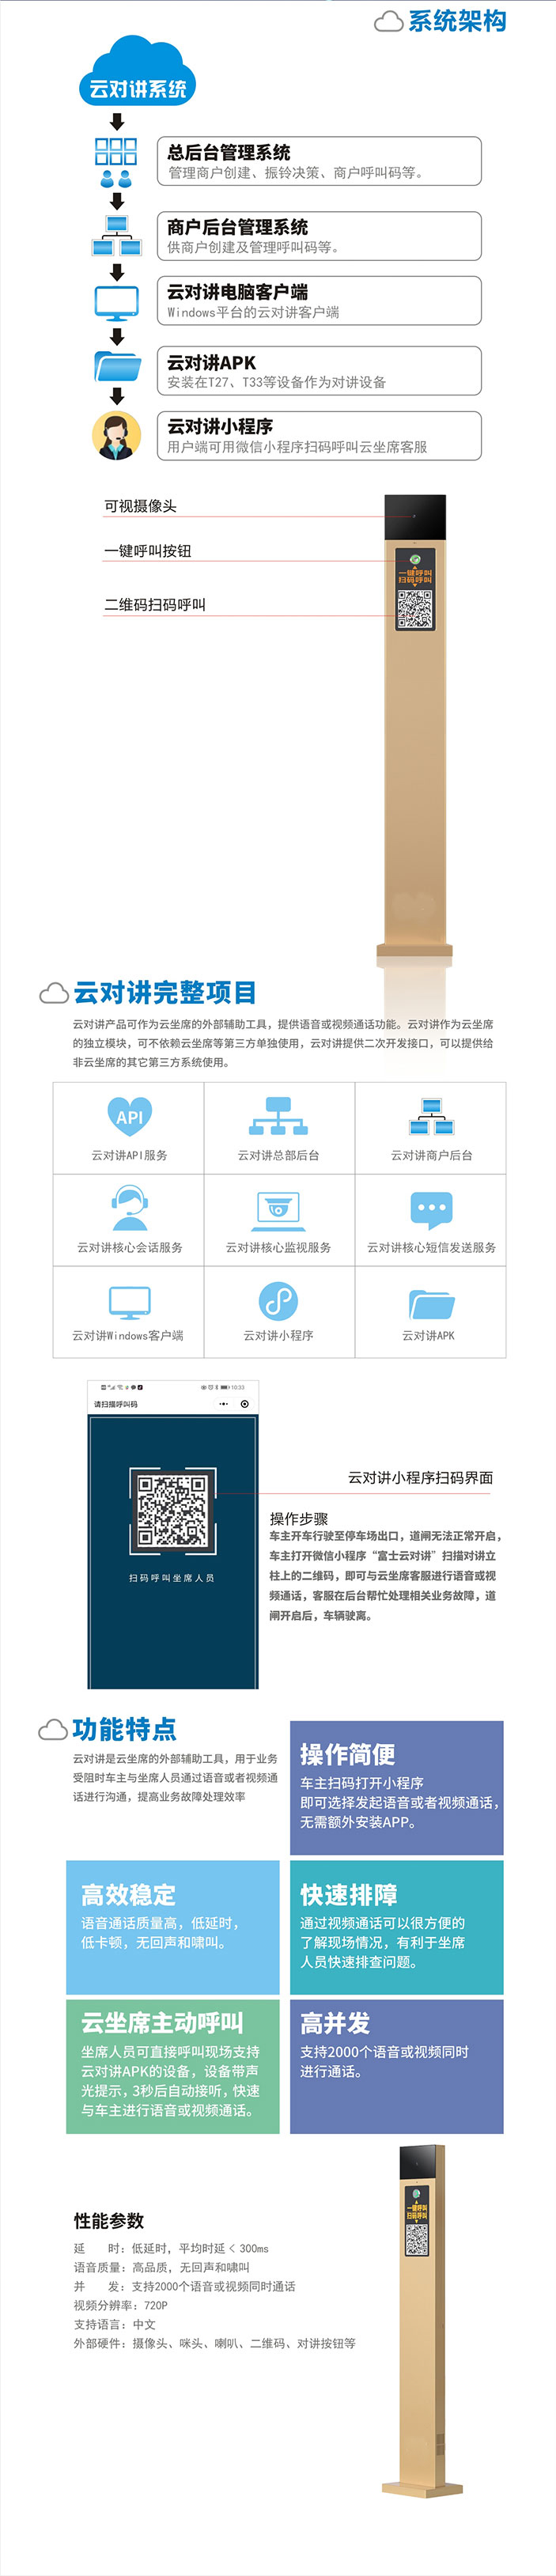 bwin·必赢(中国)唯一官方网站_公司7718